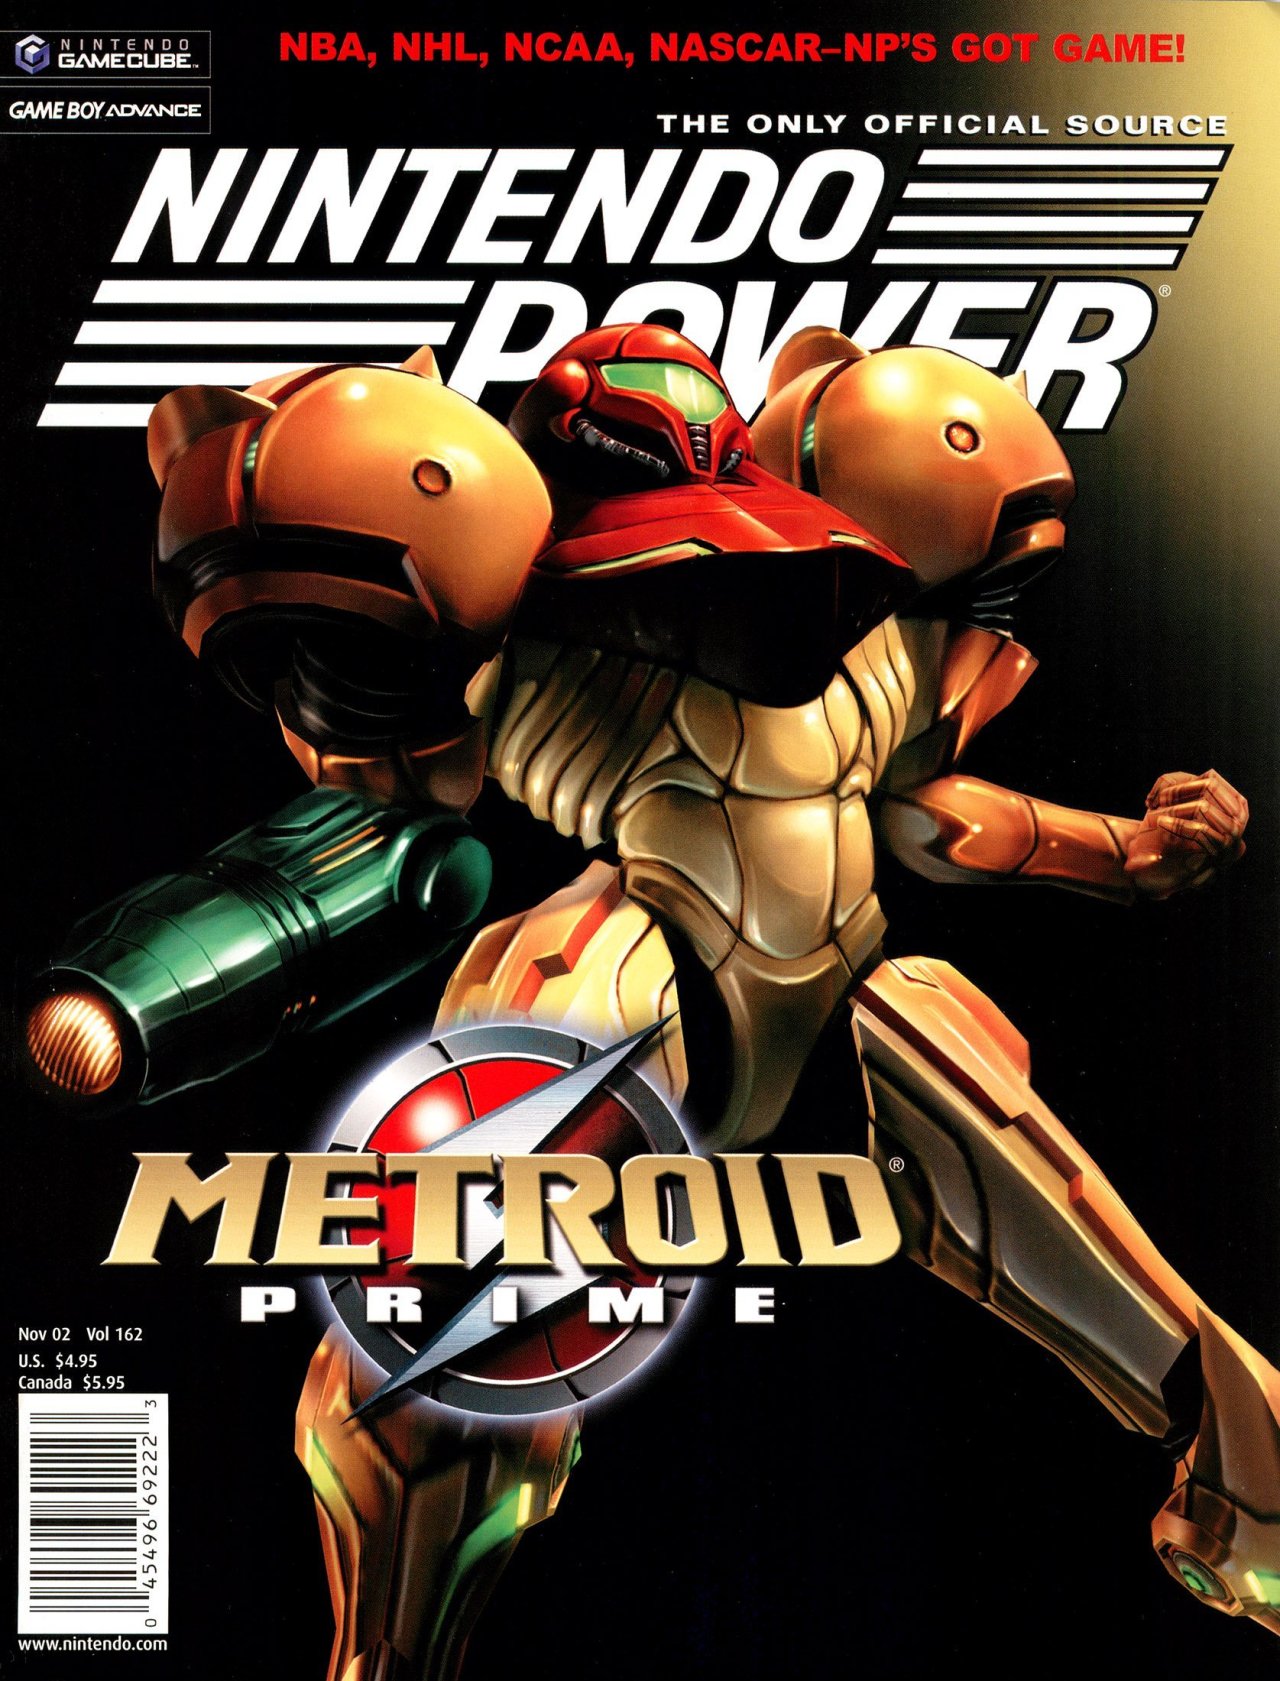 Nintendo metroid. Nintendo Power. Nintendo Power Metroid. Nintendo 2002. Metroid Prime Cover.